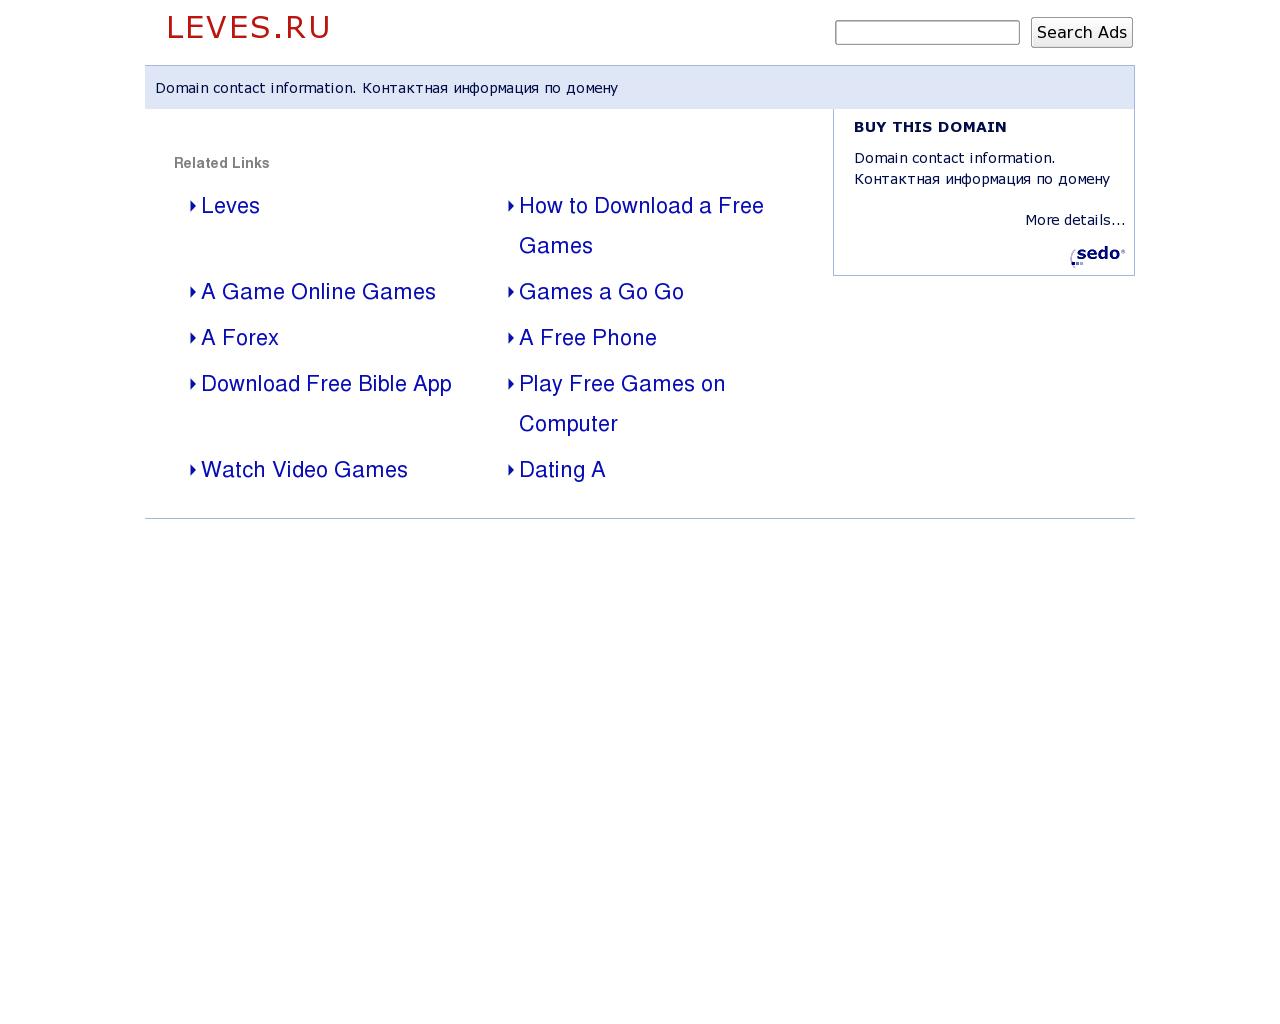 Изображение сайта leves.ru в разрешении 1280x1024